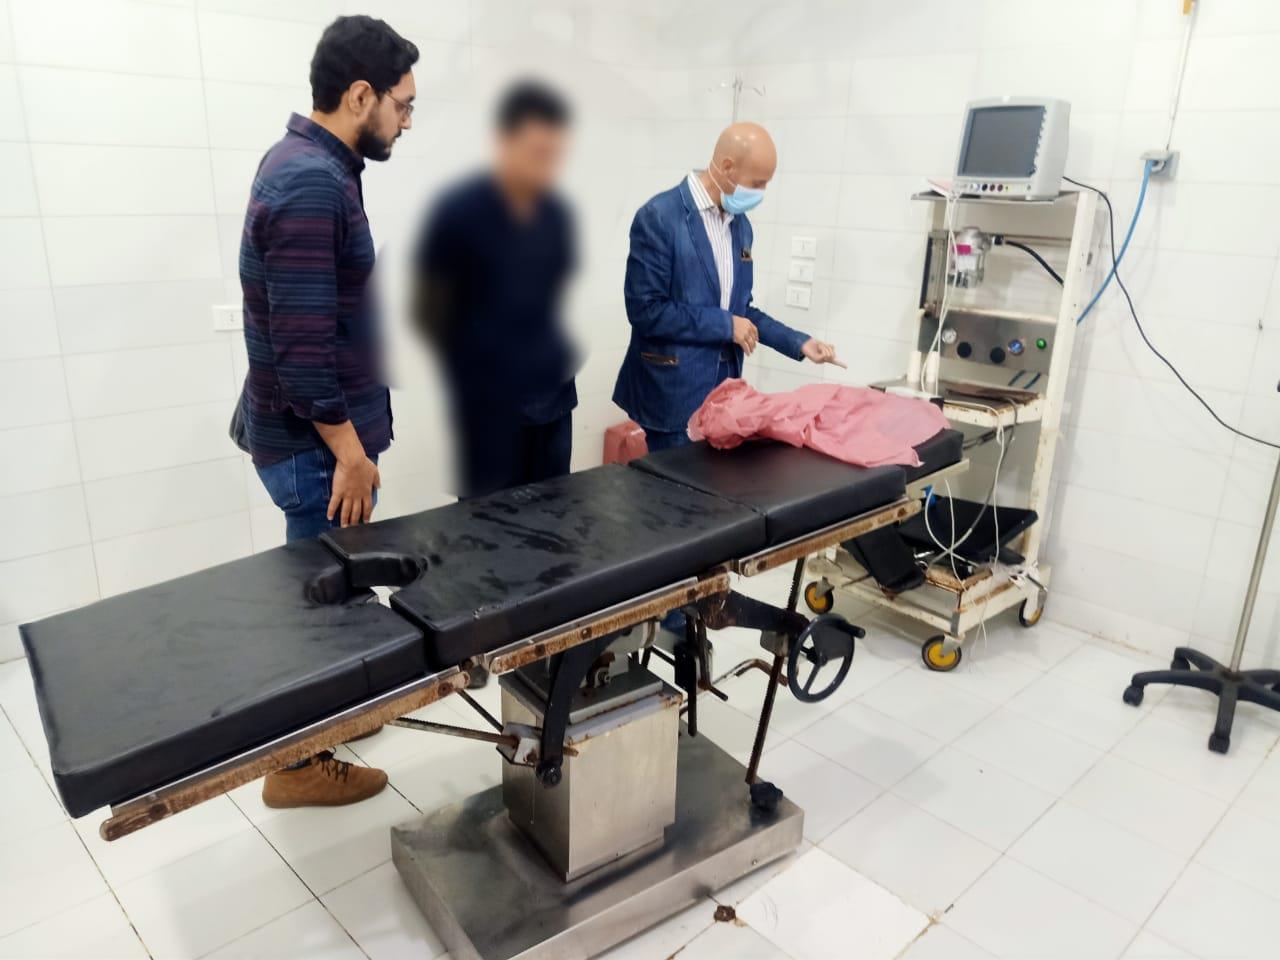  غلق وتشميع مستشفى  خاص بمركز ابو حماد. بالشرقية  تدار بدون ترخيص   وبكامل طاقتها